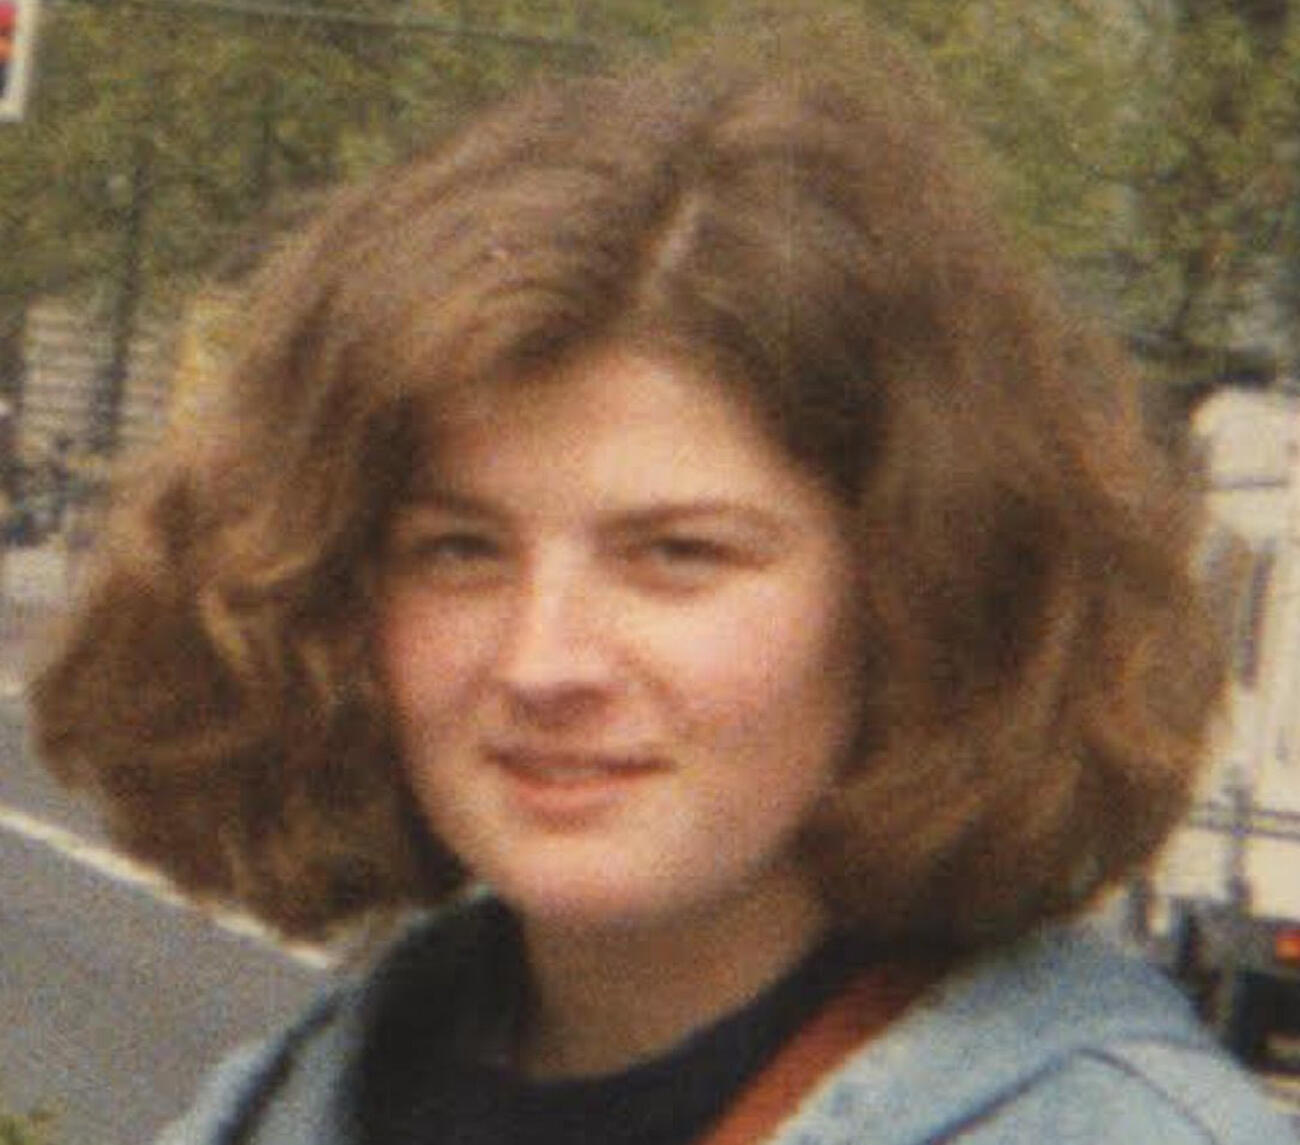 Fotografia d'arxiu d'Evi Anna Rauter, la víctima del crim de Portbou.